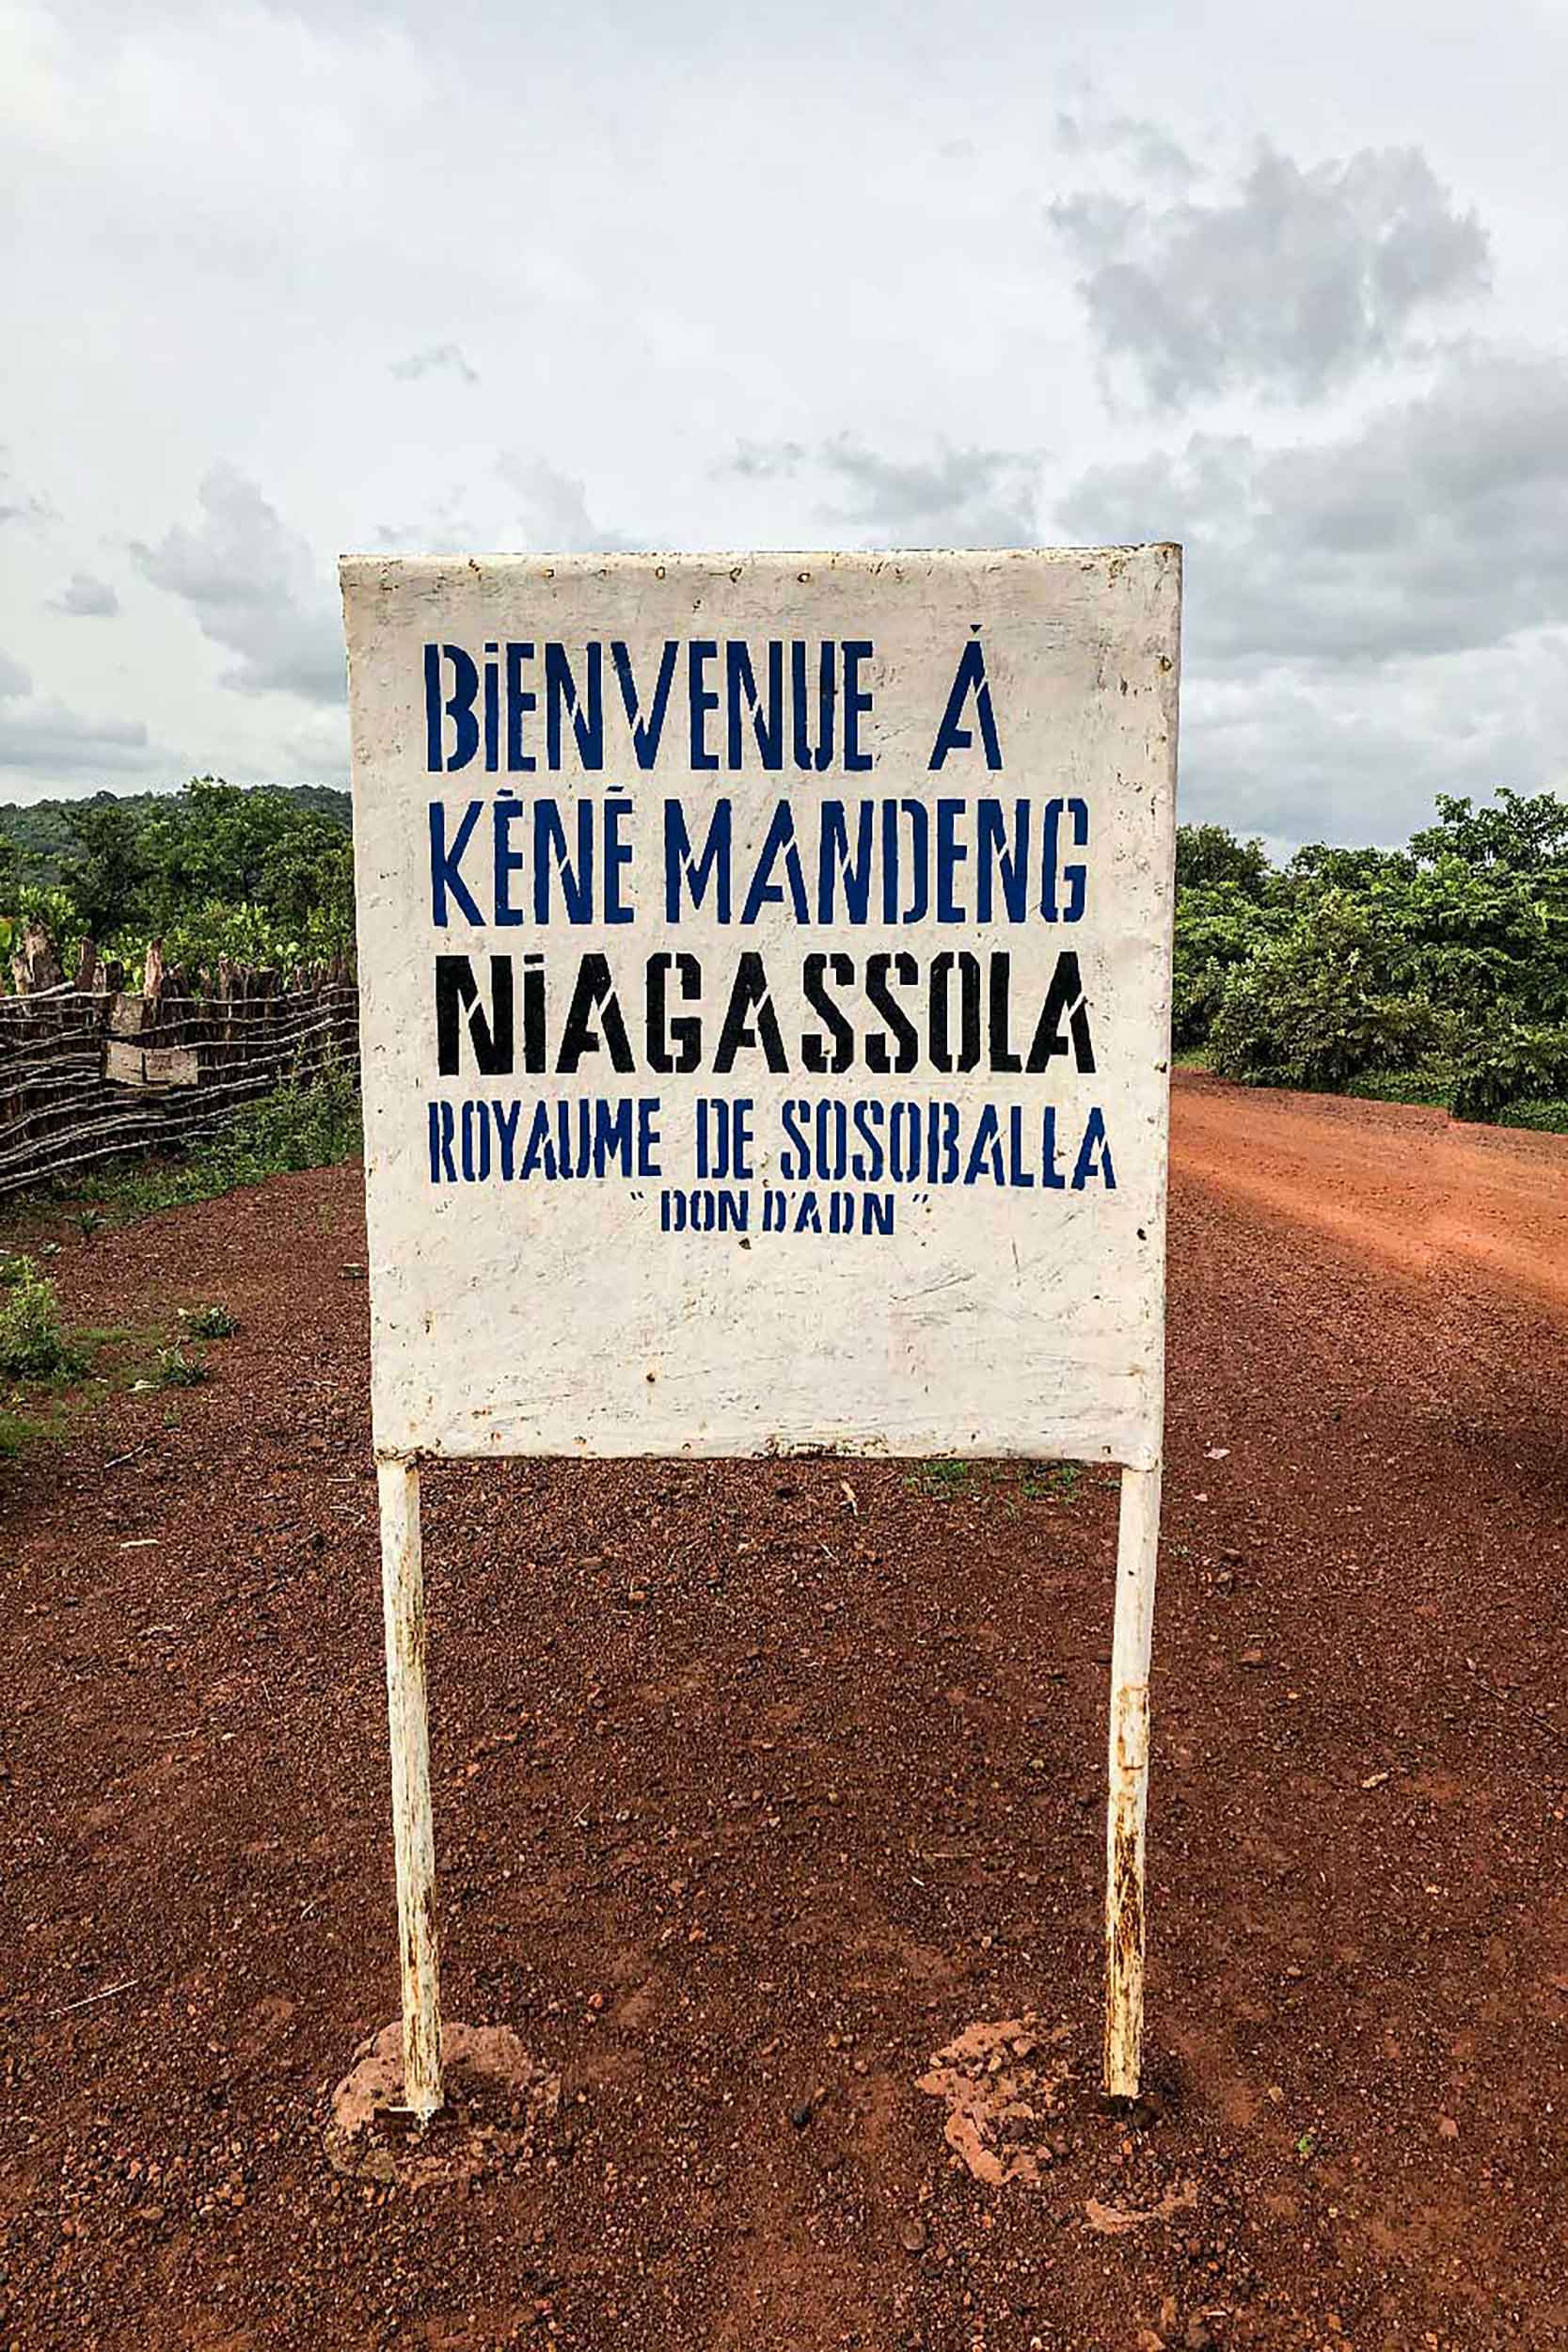 bienvenue-a-niagassola-guinee-miranass-tourisme